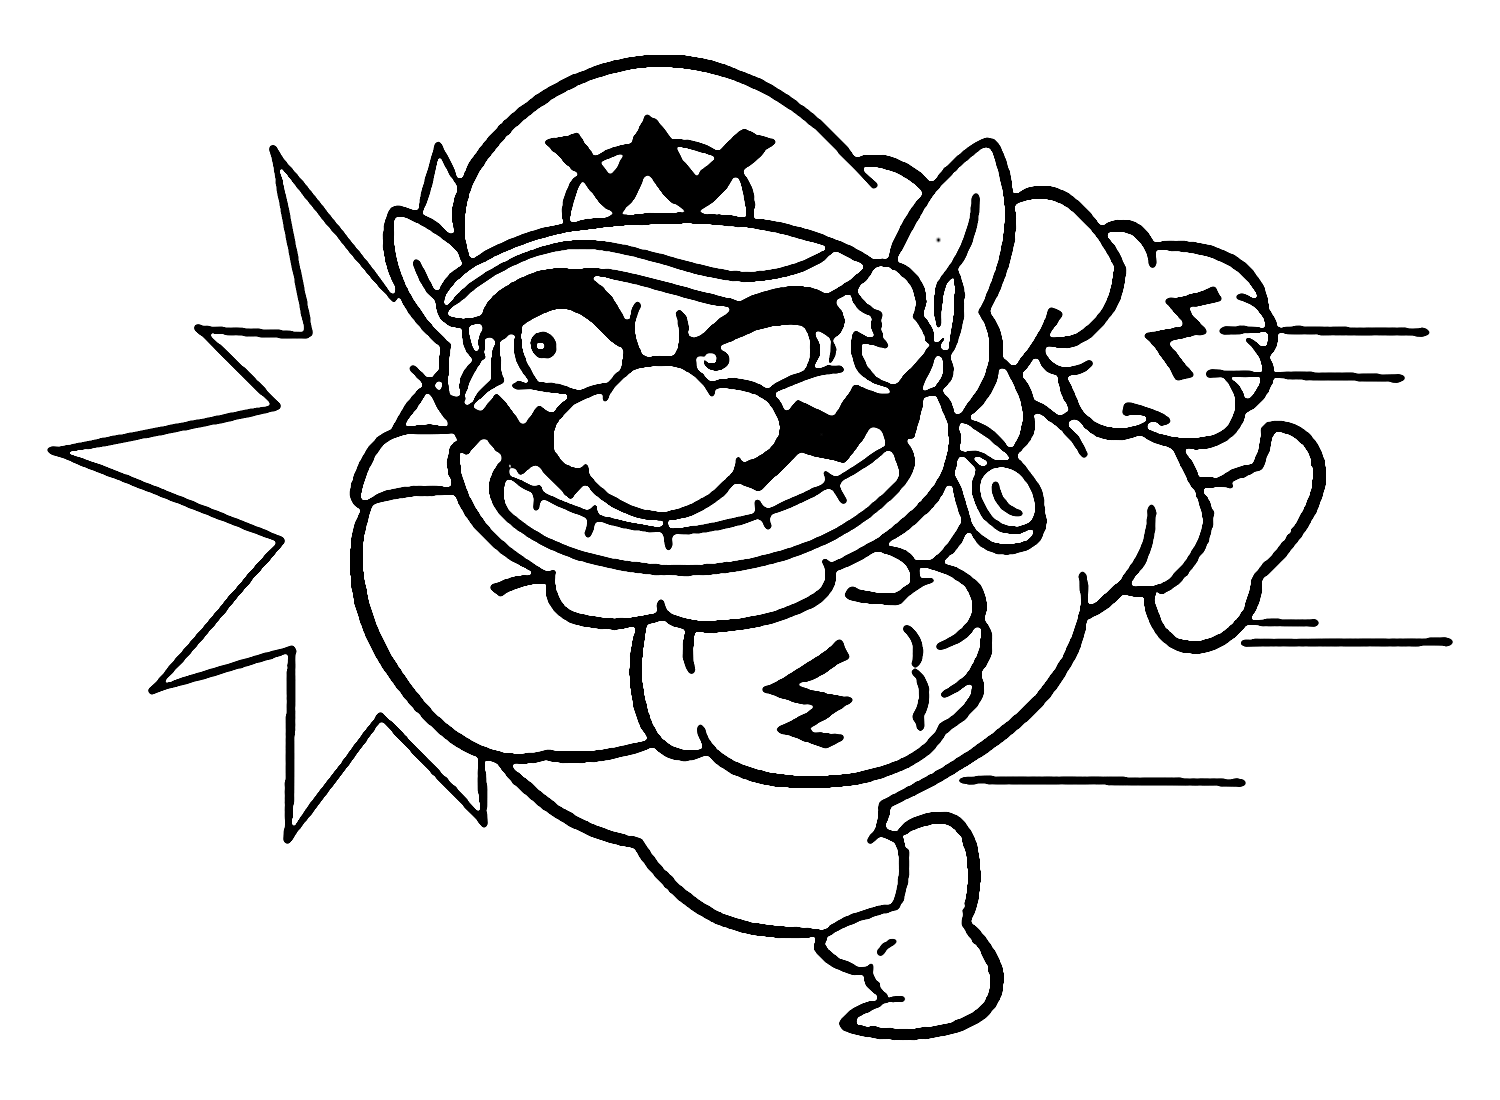 Wario in Super Mario Coloring Page